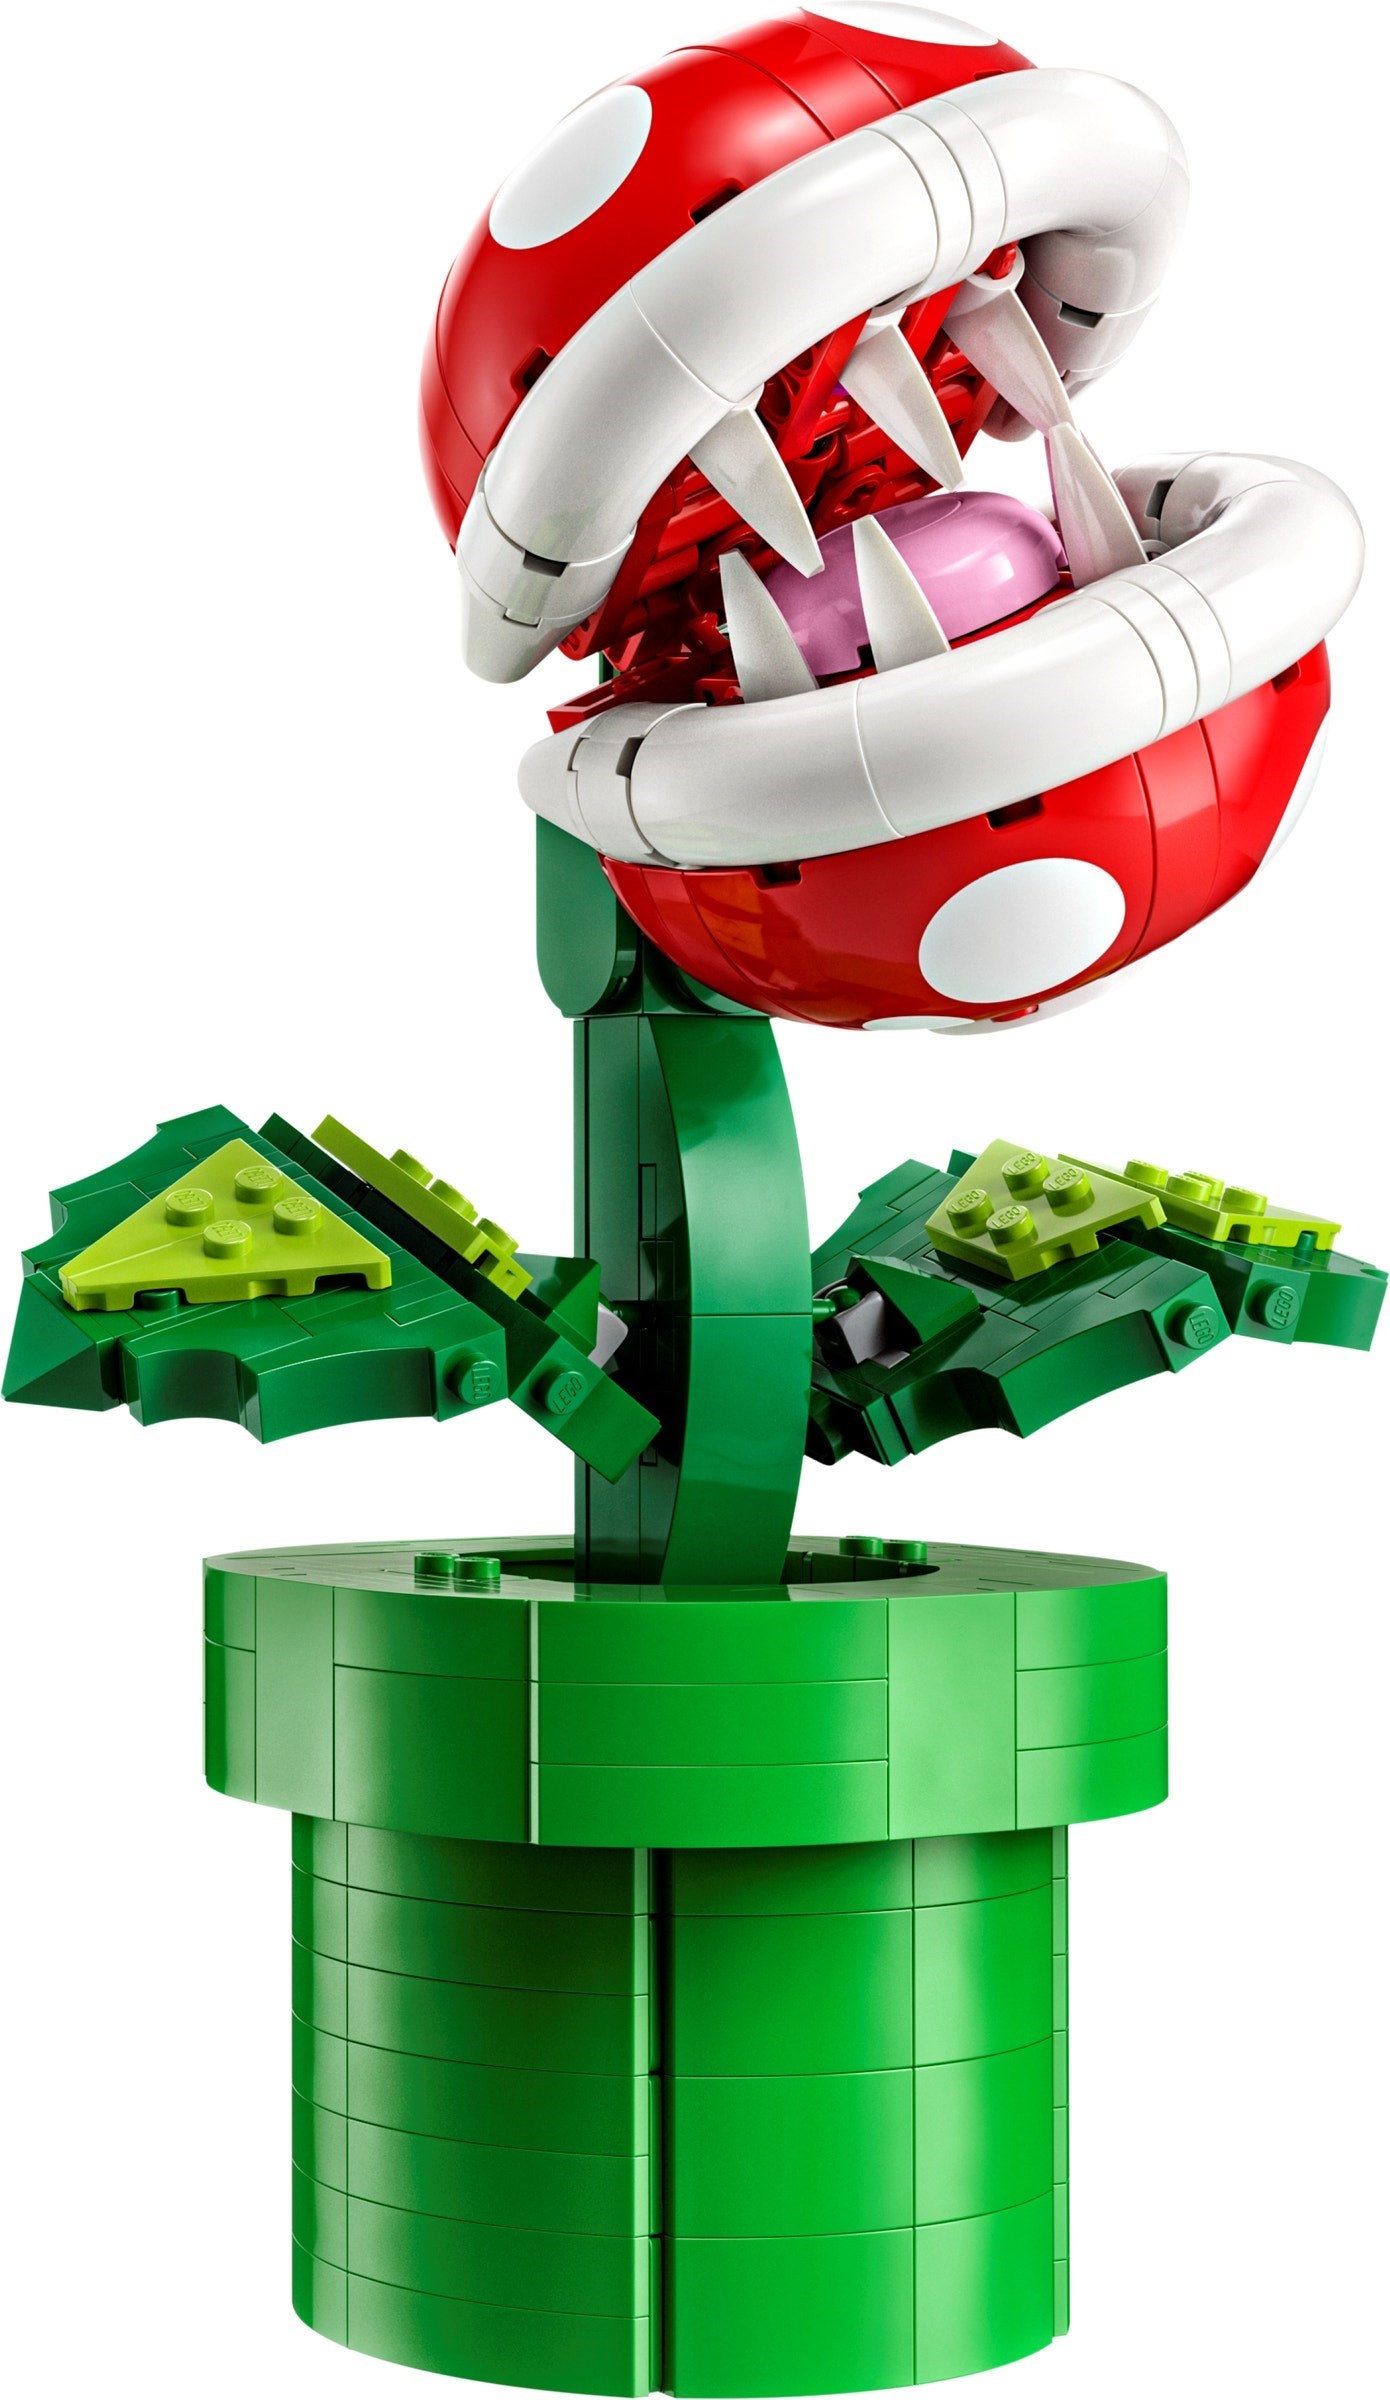 A Lego Zelda Great Deku Tree will be released in 2024, it's claimed